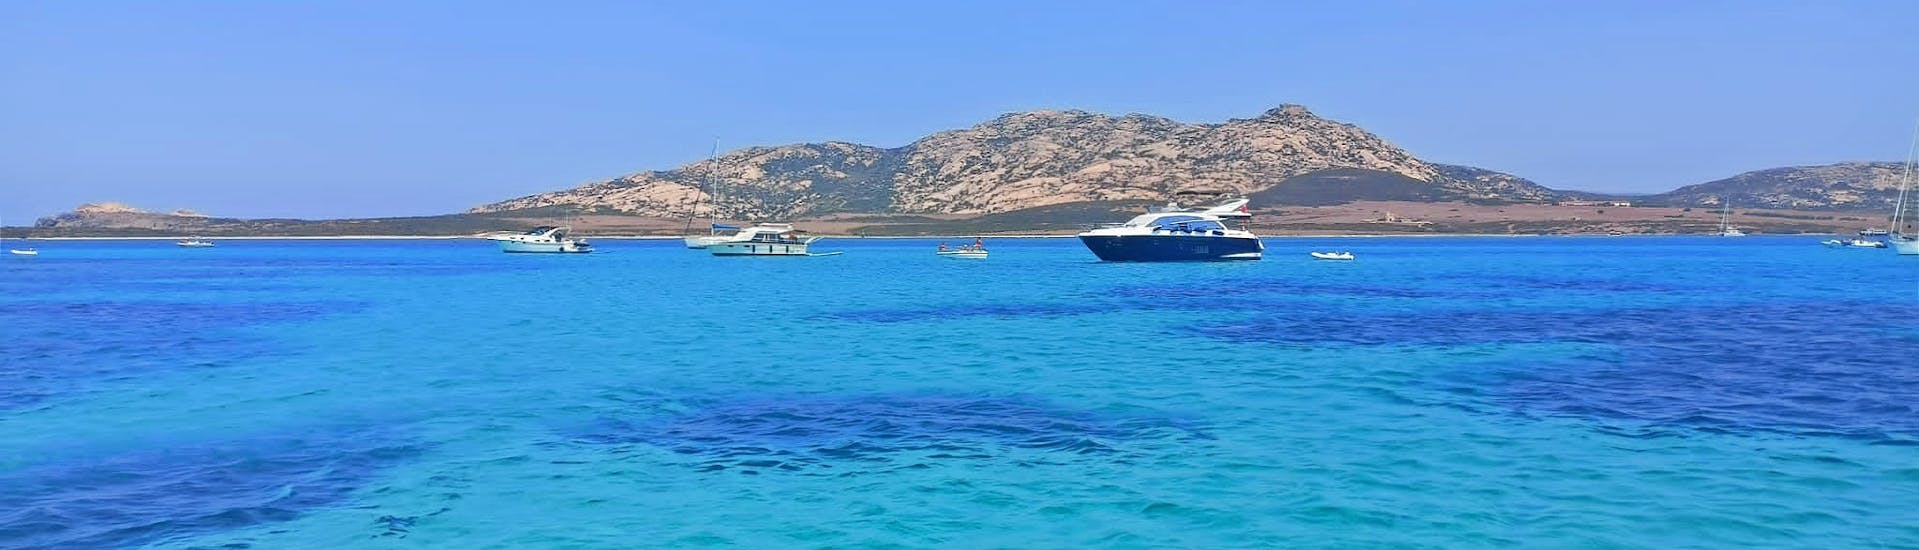 Imagen del paisaje que se puede admirar a bordo con Asinara's Latin Sails durante el viaje en velero privado al Parque Nacional de Asinara desde Stintino con almuerzo.